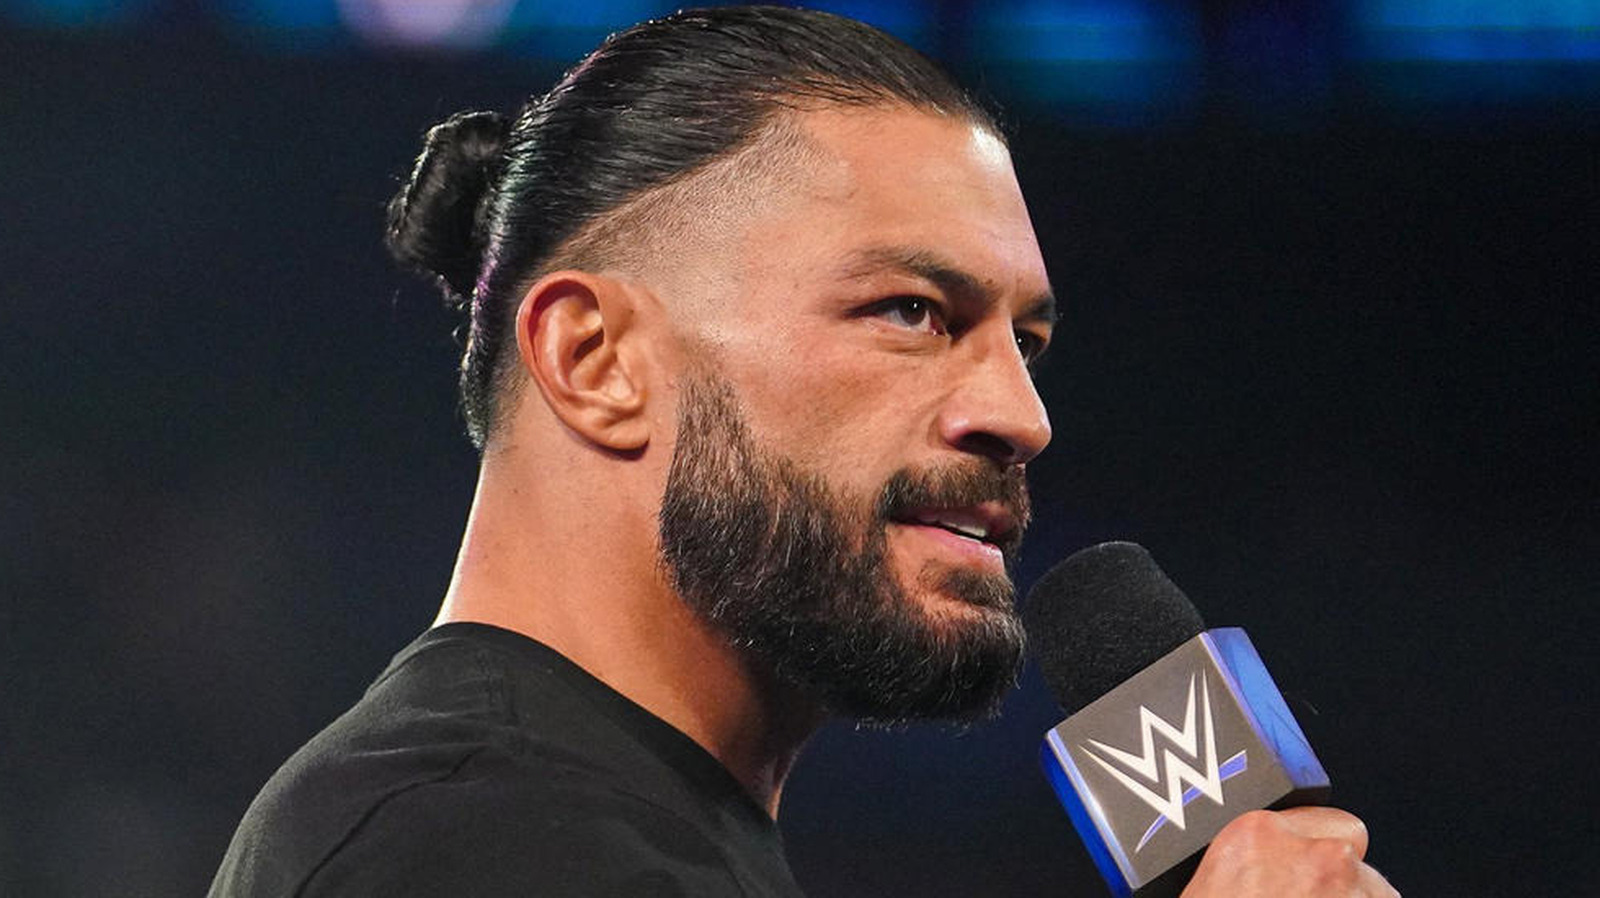 Avance de WWE SmackDown 6/16: Roman Reigns regresa